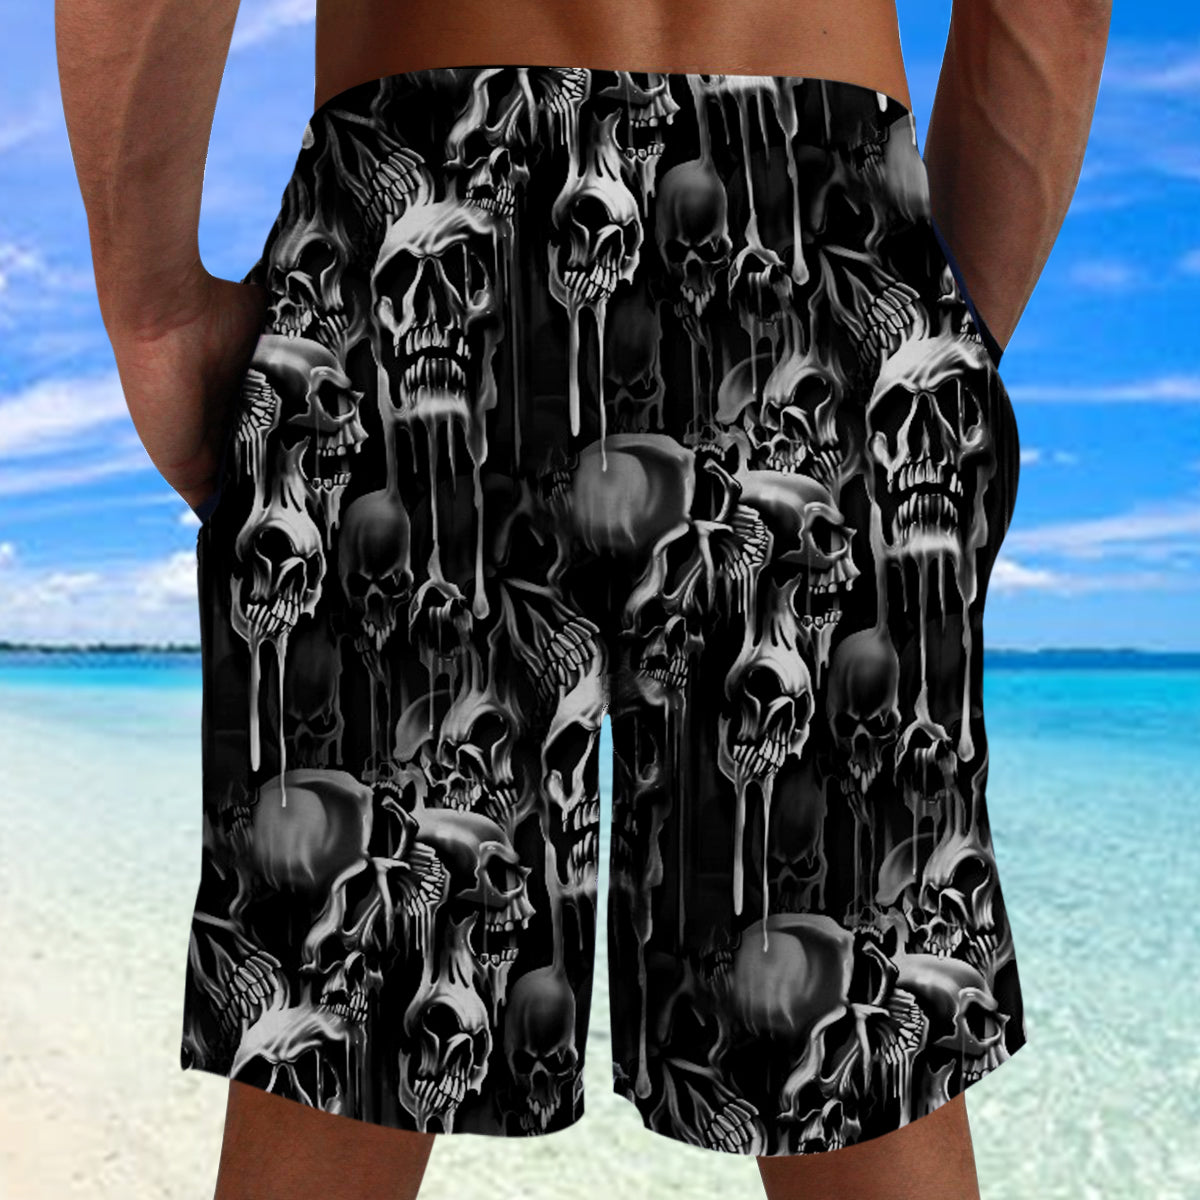 Melting Skull Combo Beach Shorts and Hawaii Shirt 09951